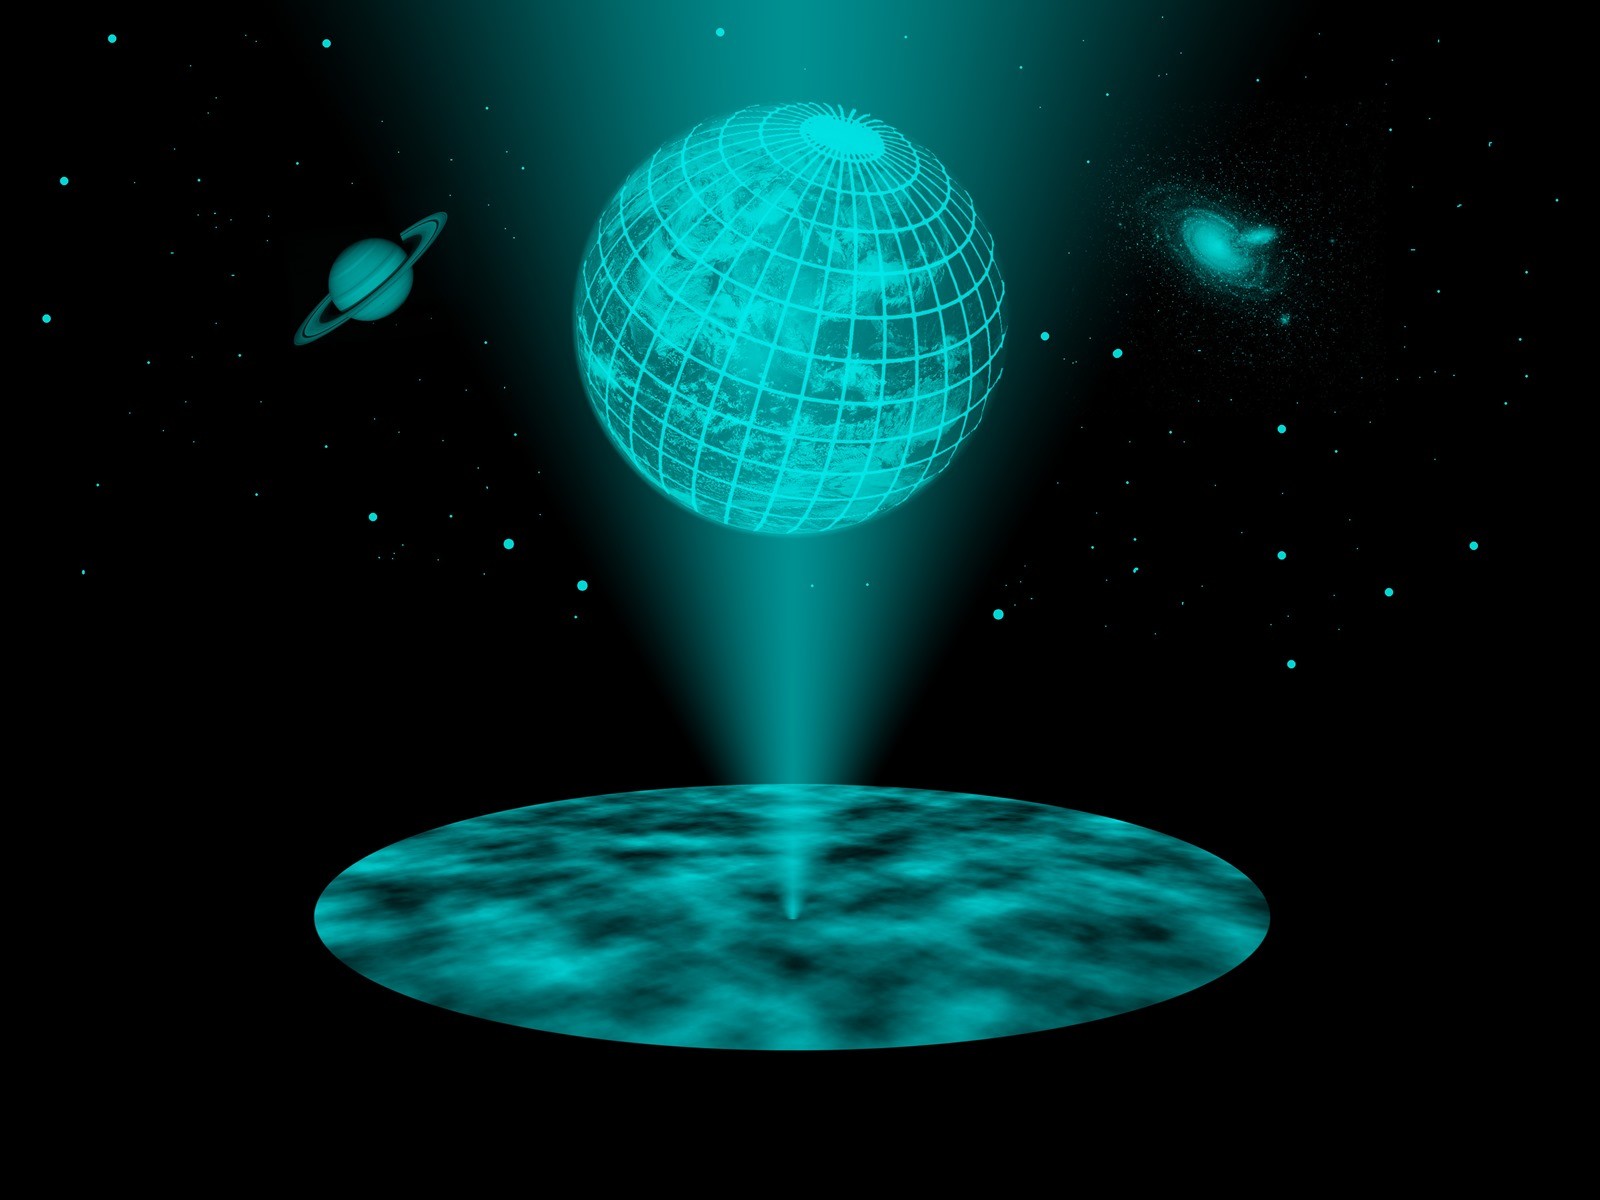 Ce qui semble être les premiers indices indiquant qu’au début de notre Univers celui-ci était un hologramme